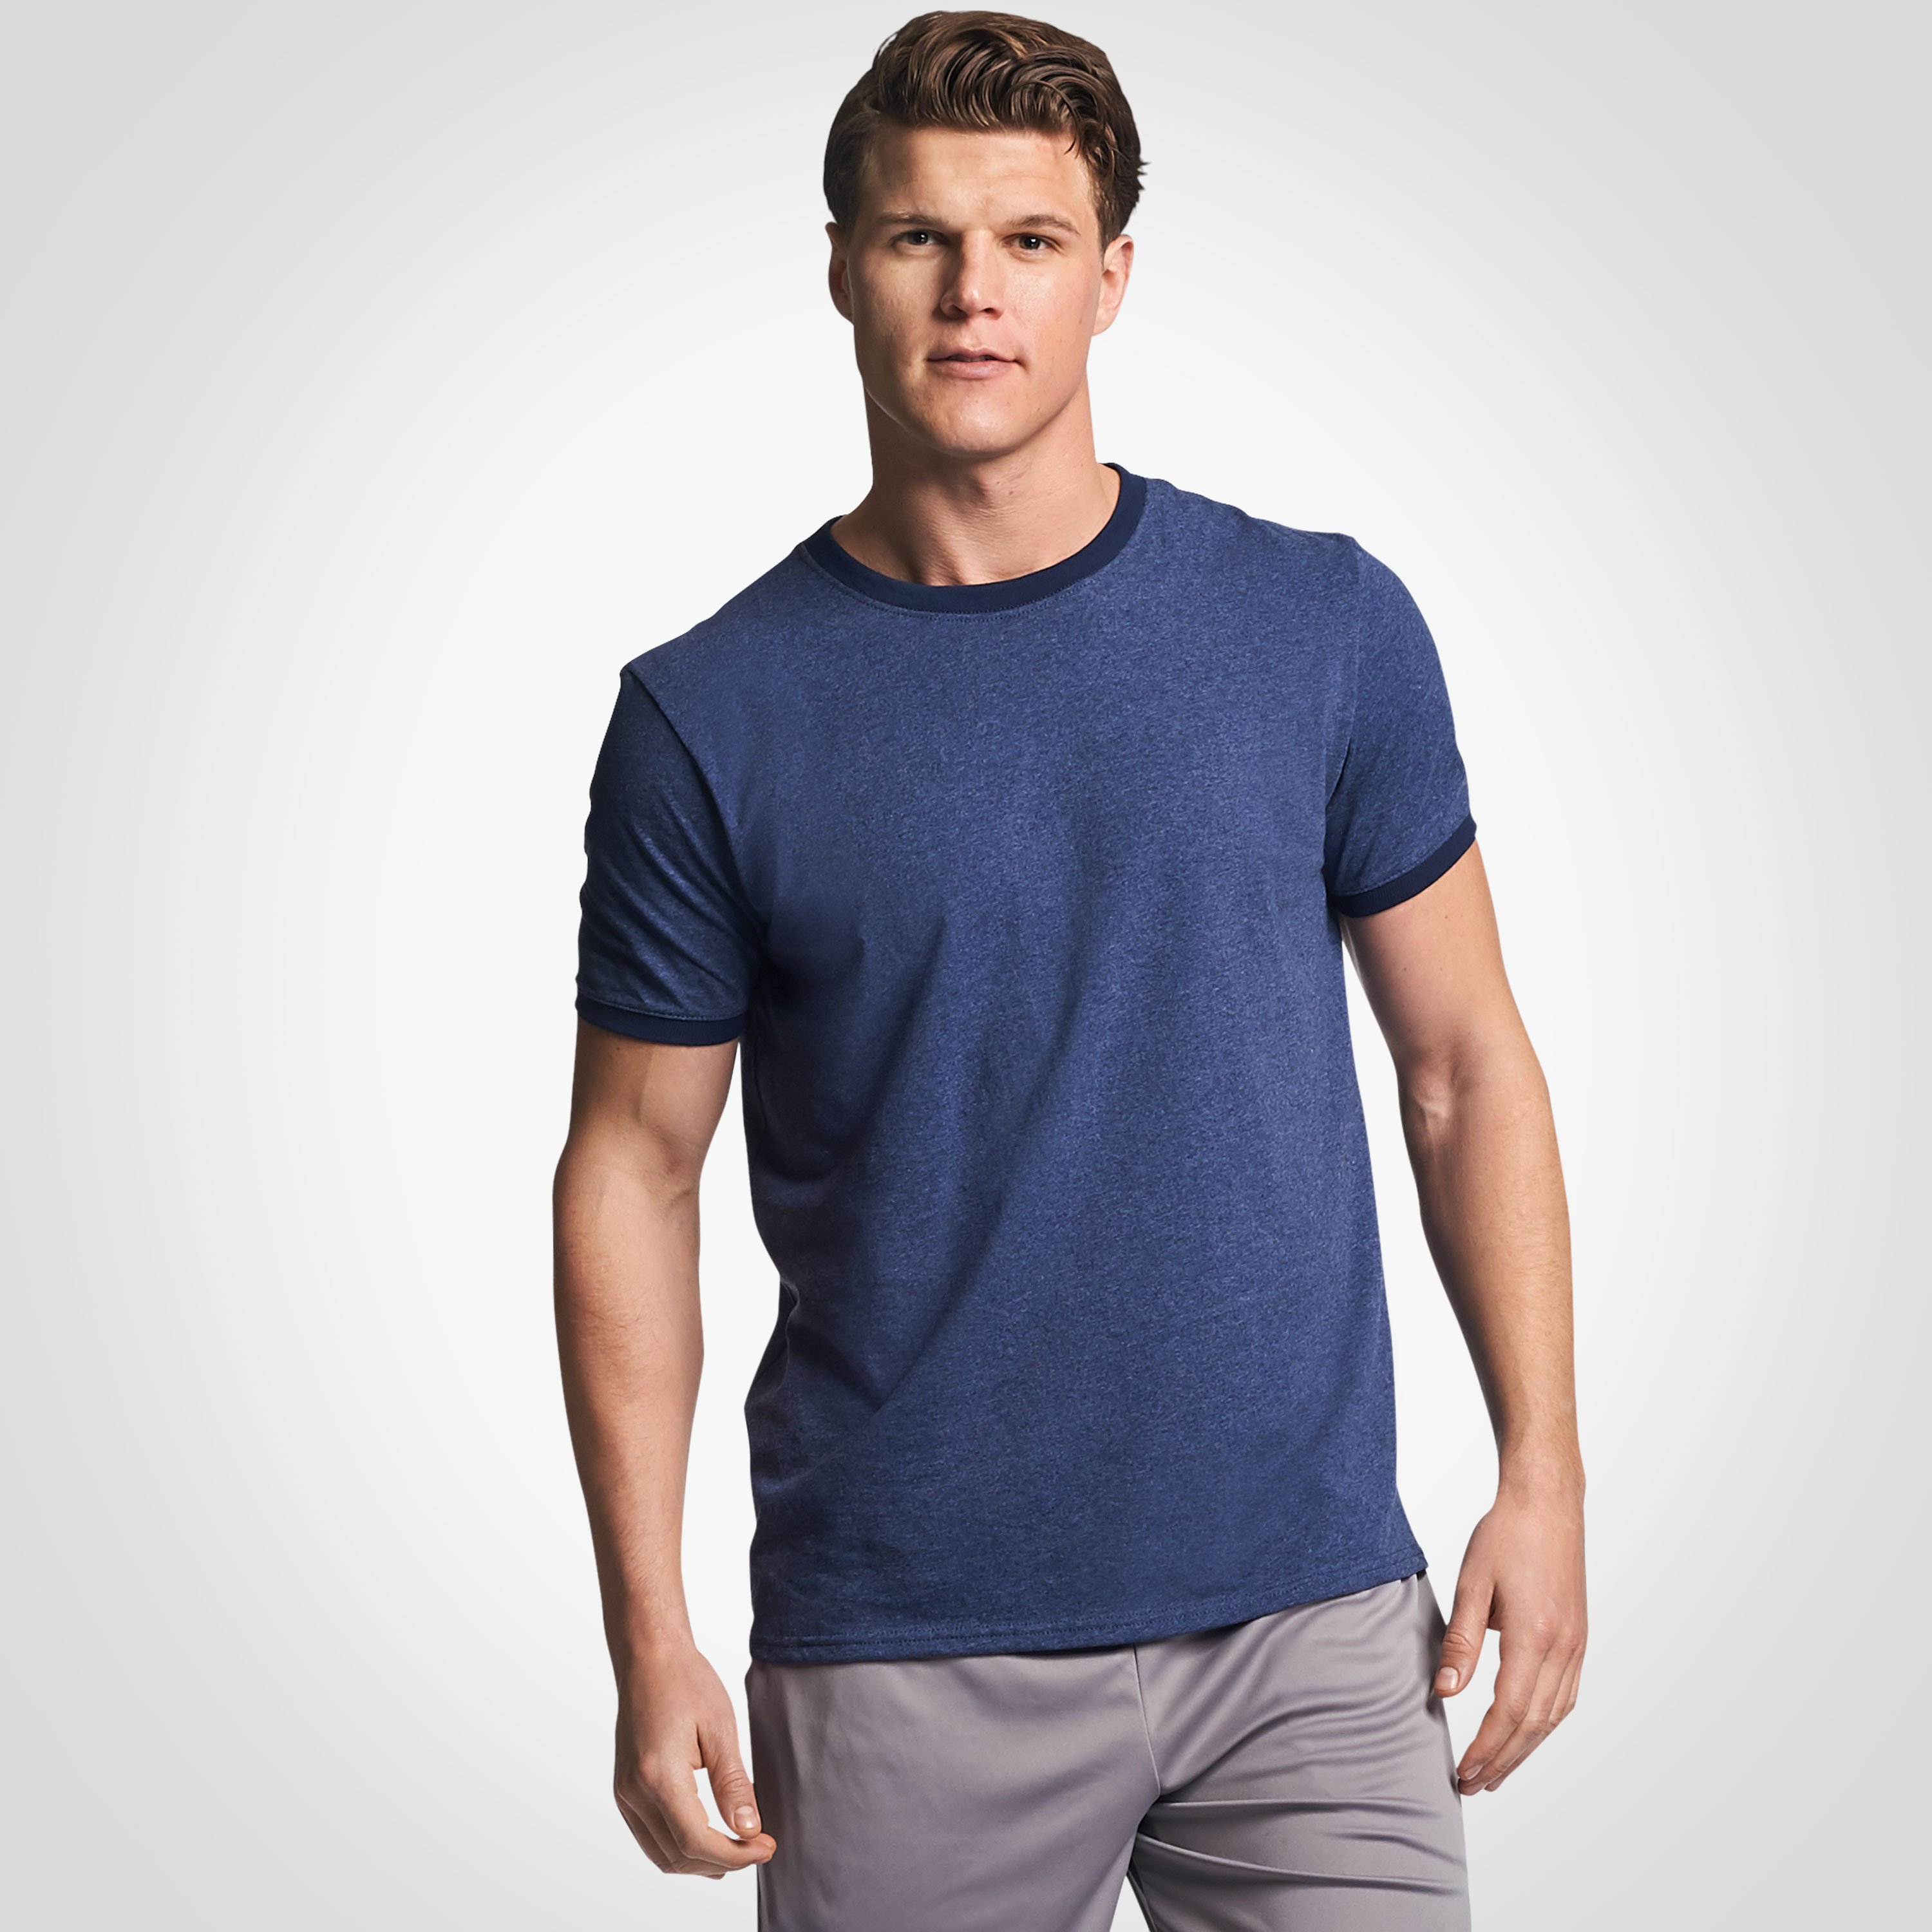 Men's Cotton Performance T-Shirt